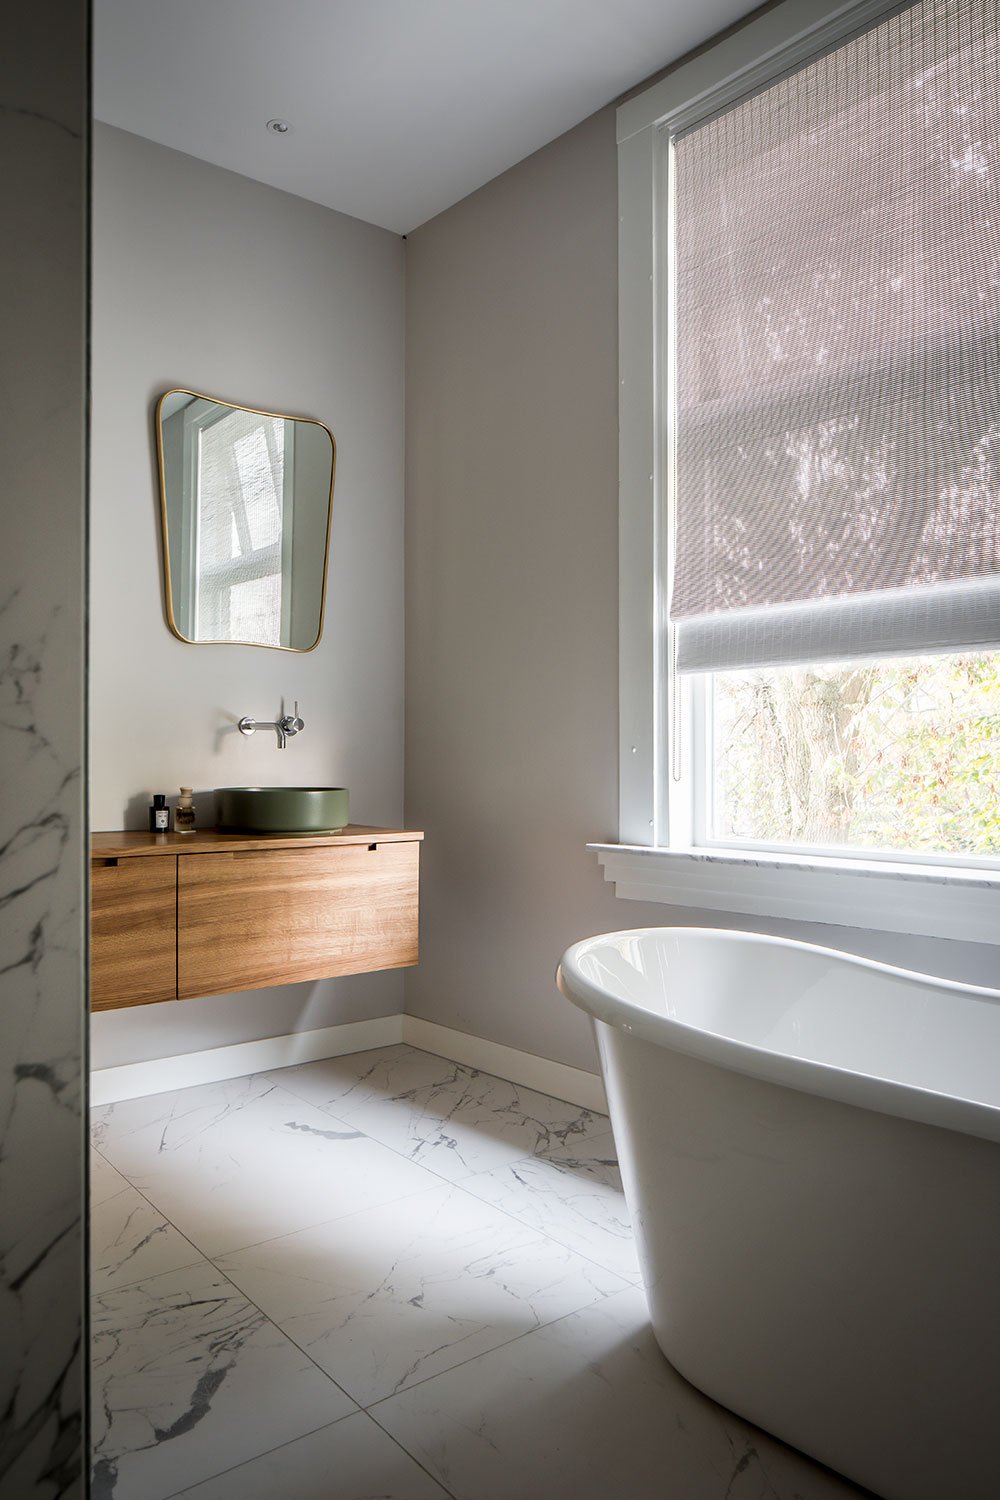 dutch interior design marble bathroom bathtub